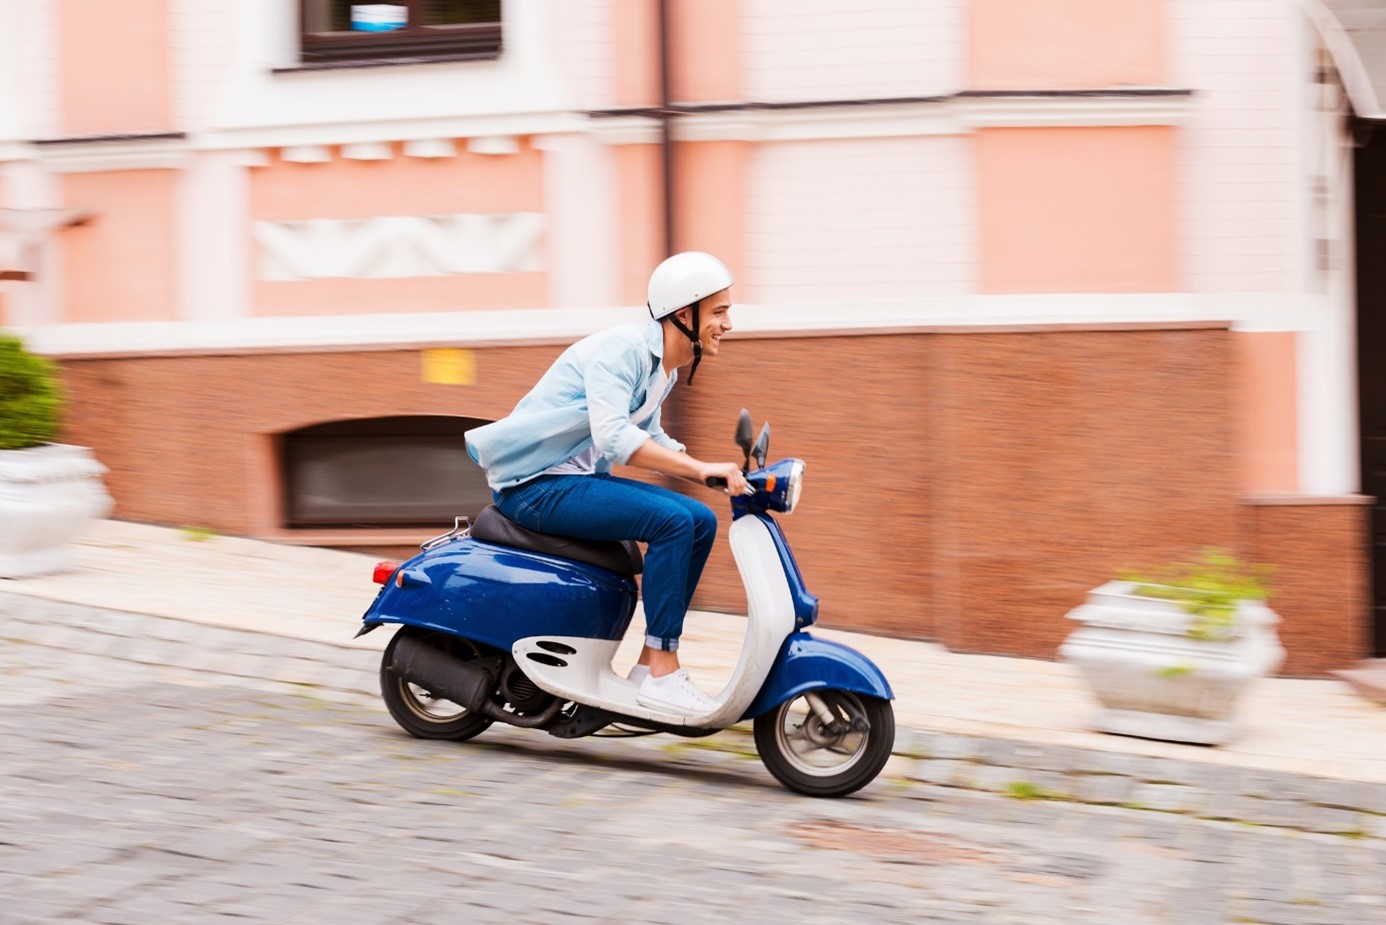 Post successivo: Quanto è utile una moto 50cc per muoversi in una città trafficata?